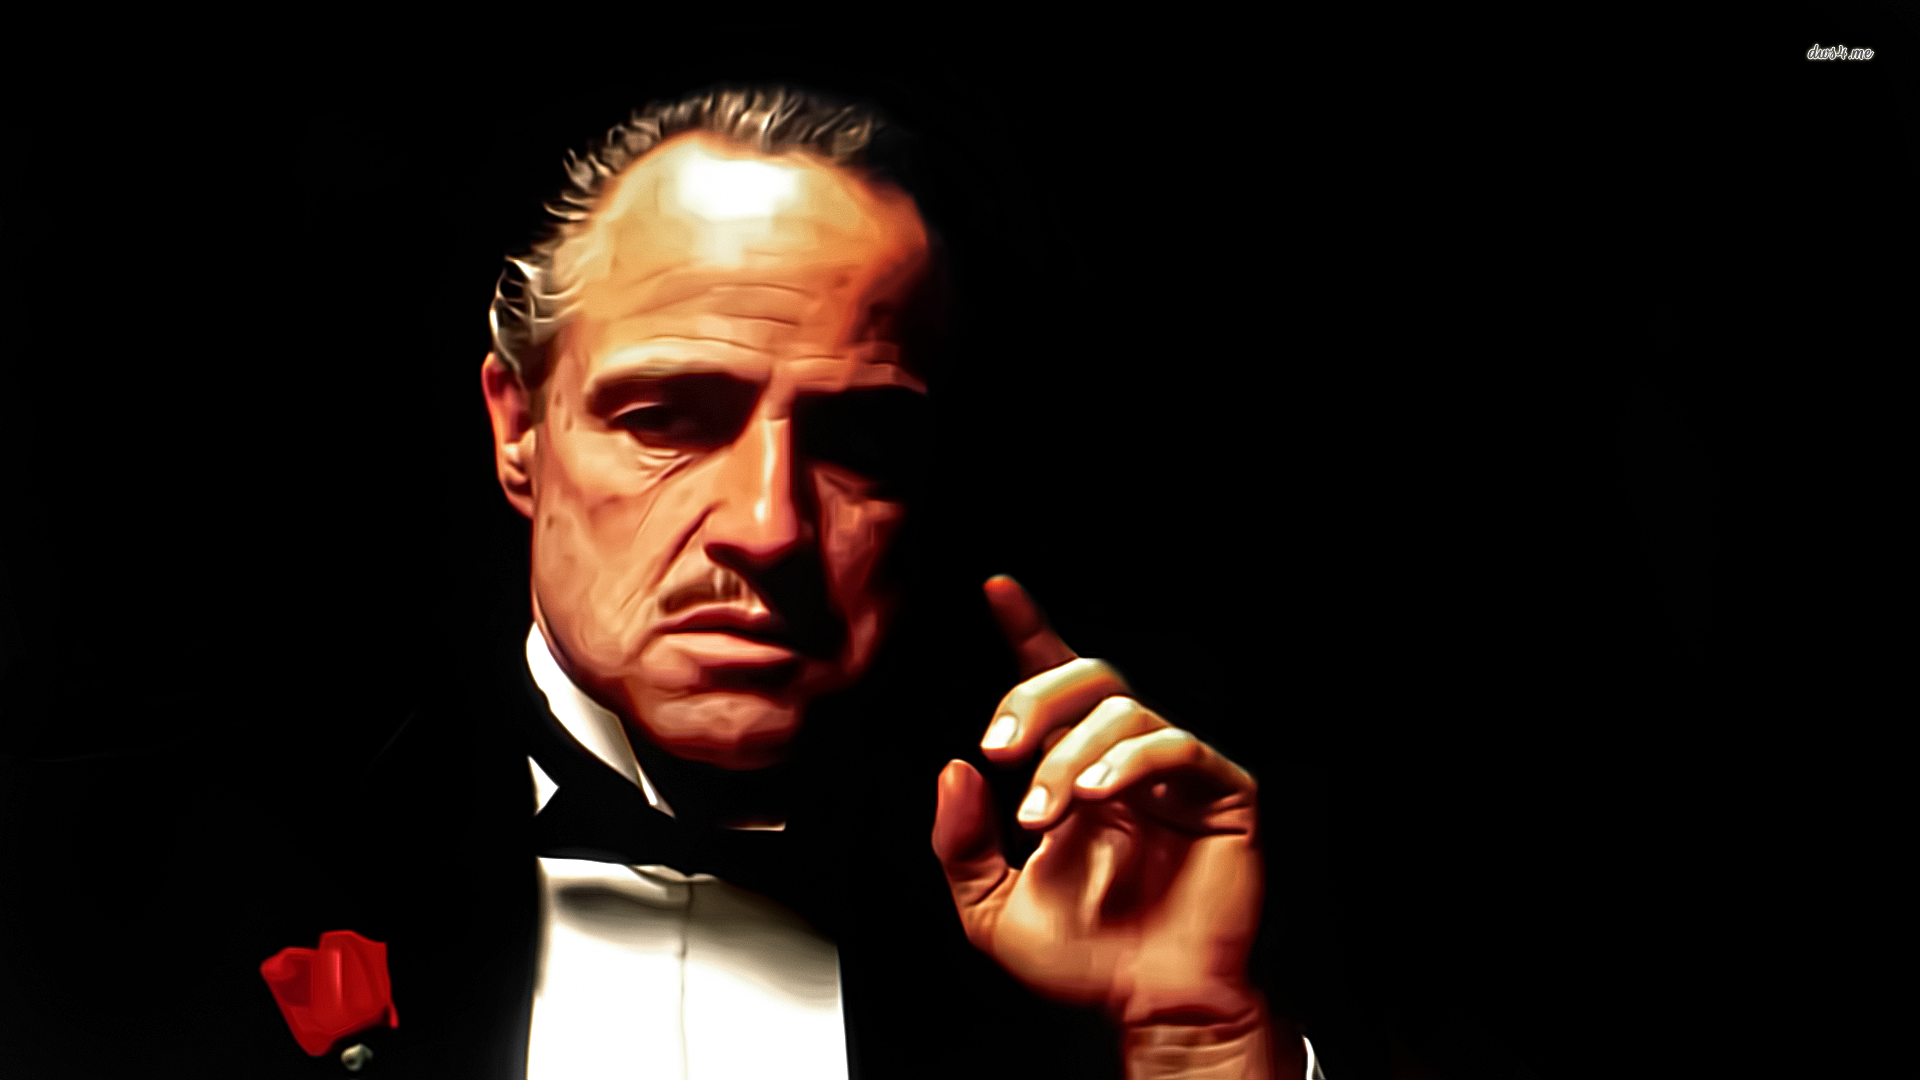 The Godfather Marlon Brando Photoshop Vito Corleone 1920x1080